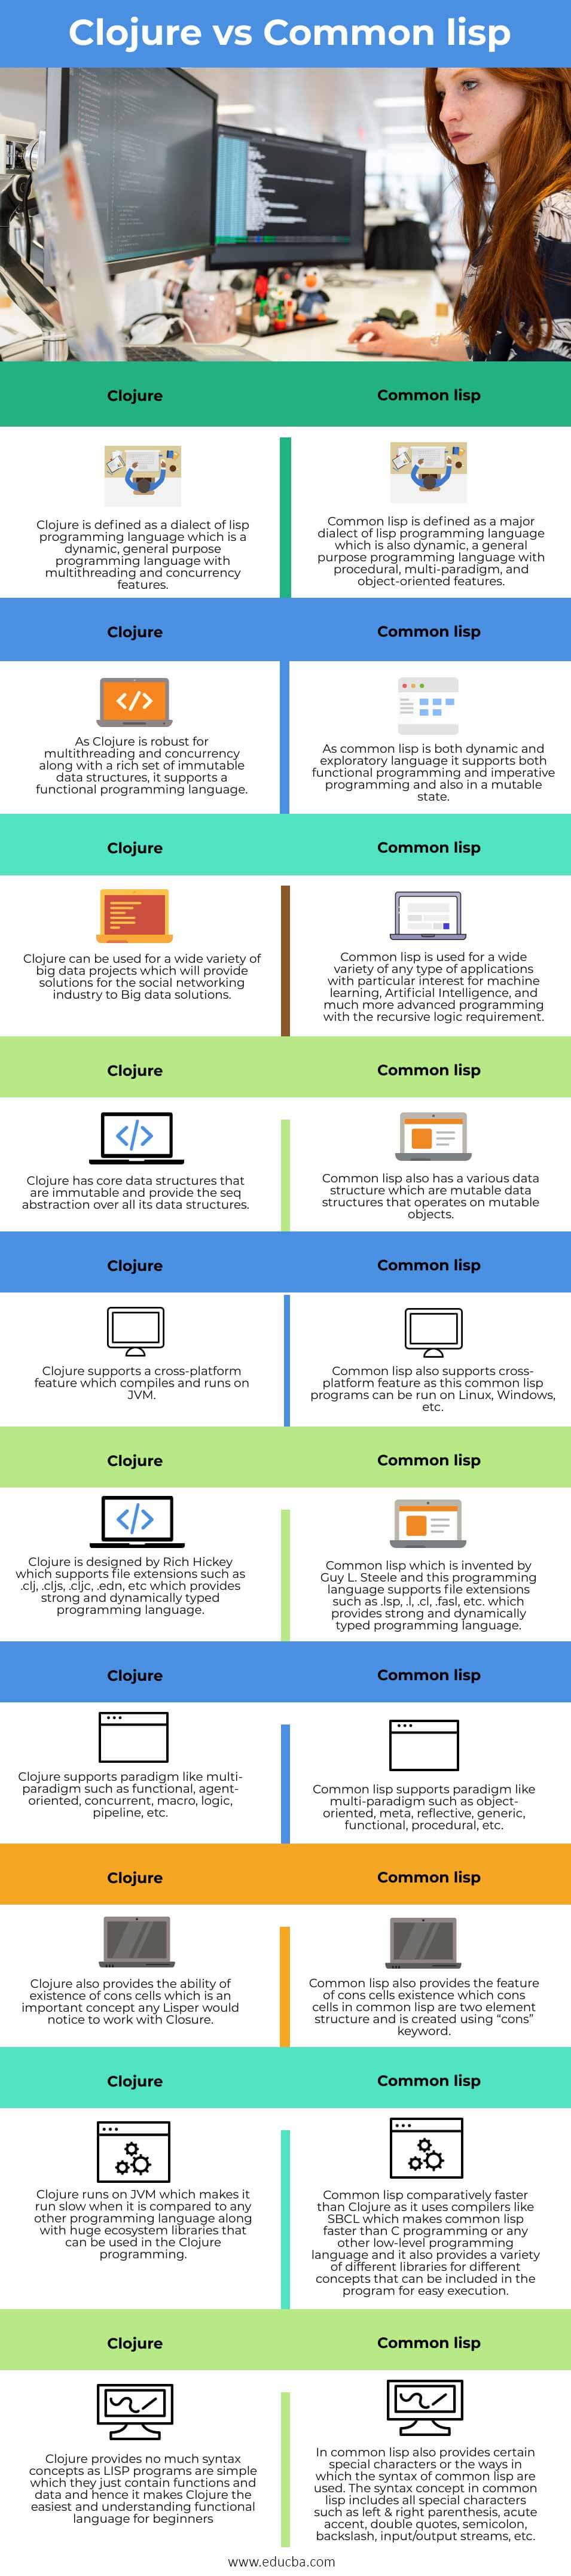 Clojure-vs-Common-lisp-info